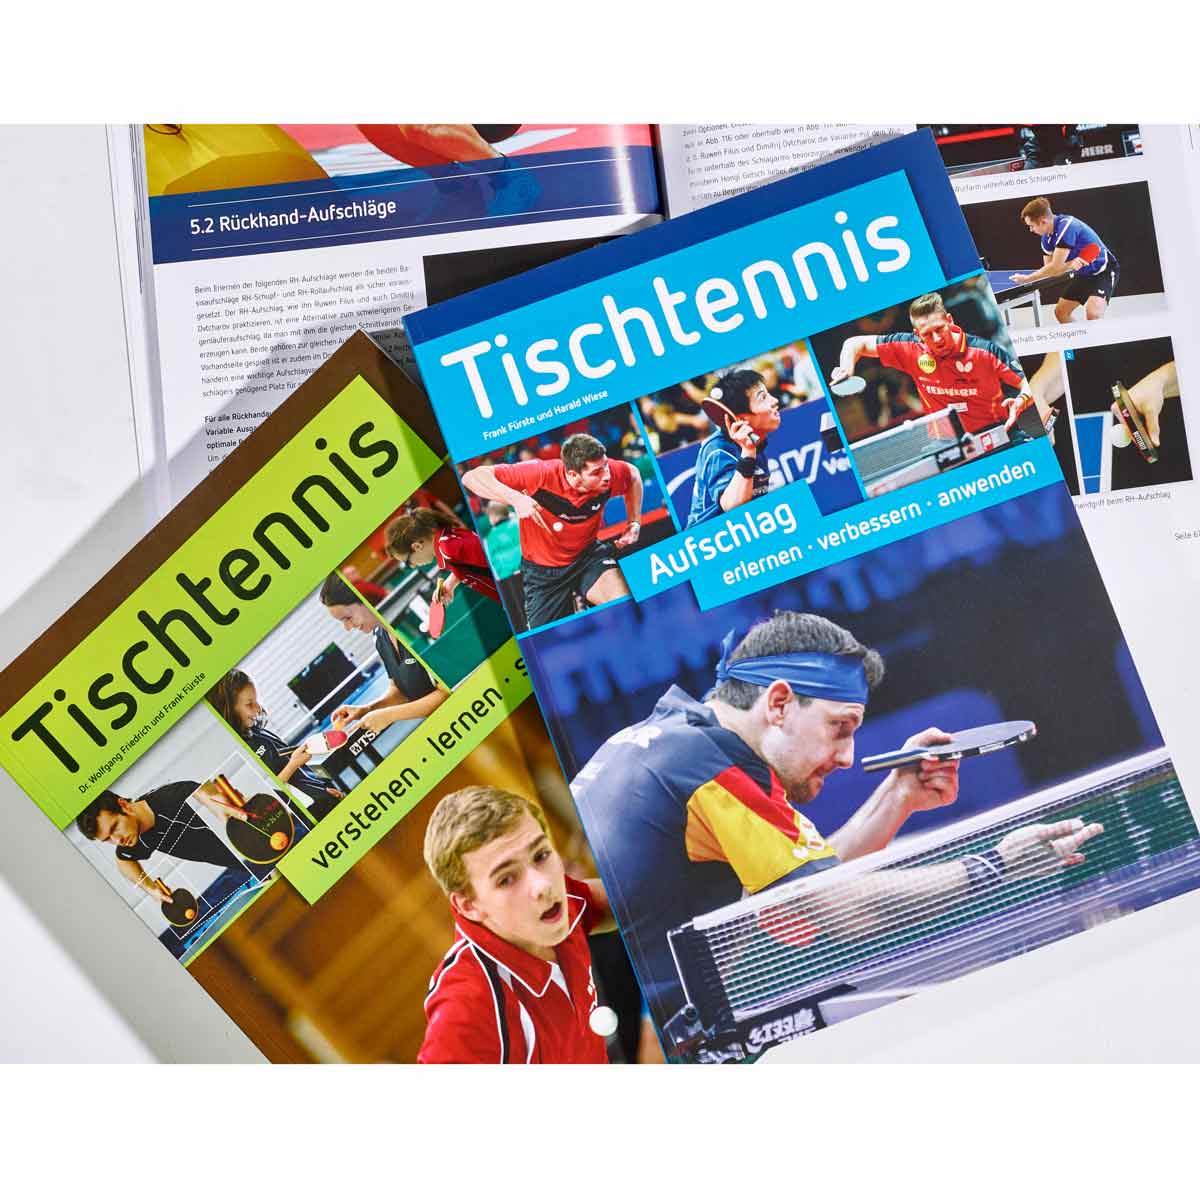 Book: Tischtennis Aufschlag erlernen-verbessern-anwenden